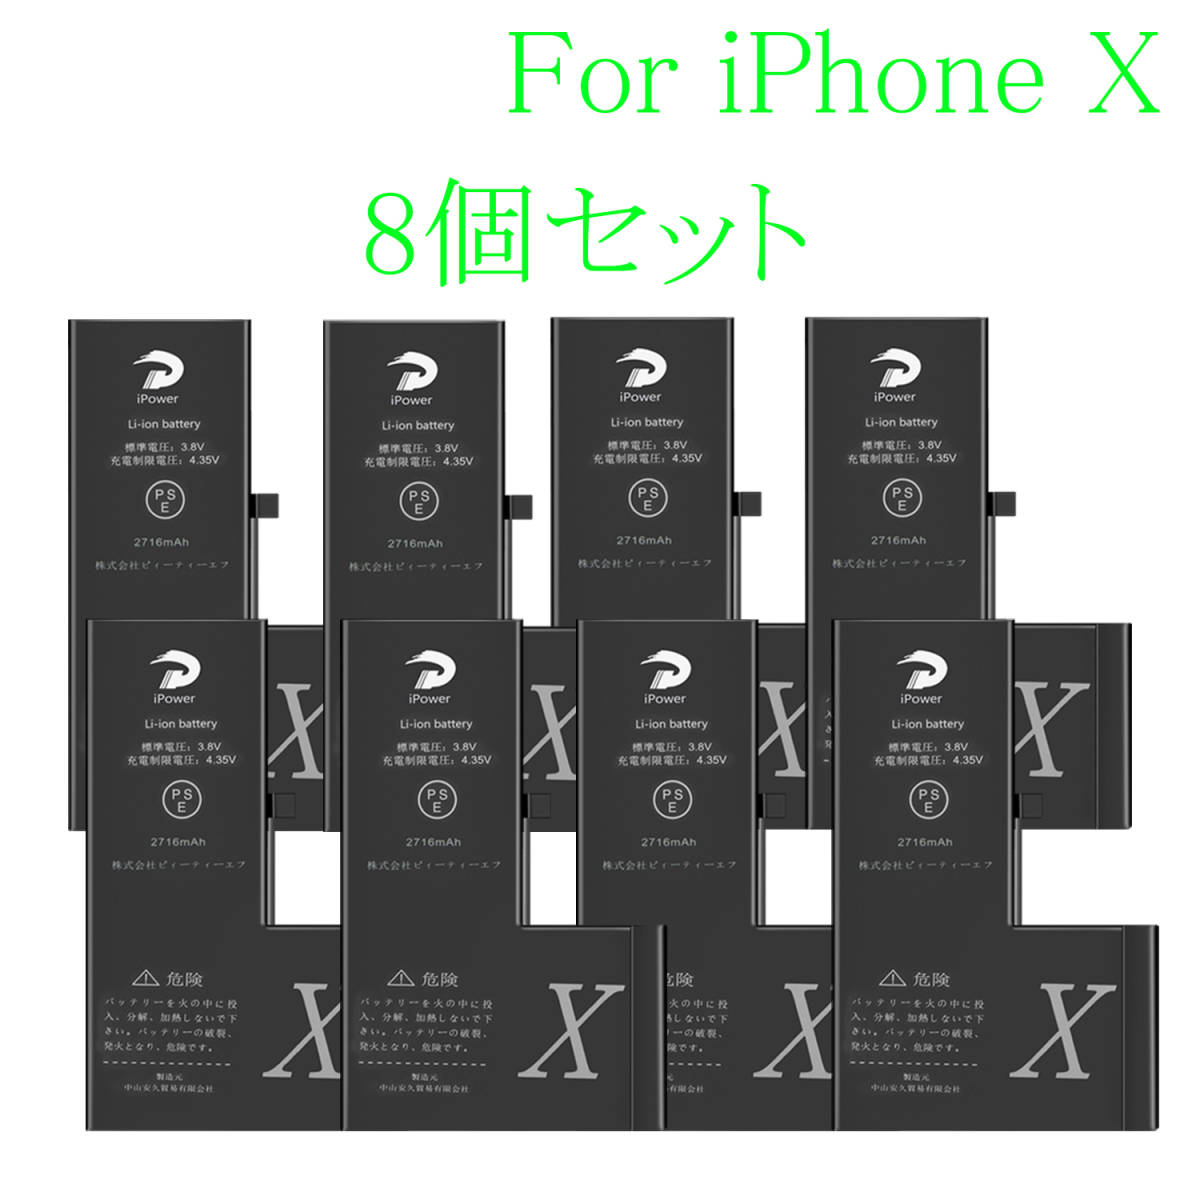 【送料込 新品】8個セットセール 値引き For iPhone X 互換 バッテリー PSE準拠 修理 交換 シール付き Battery 2716mAh 3.8V 安9 iPower